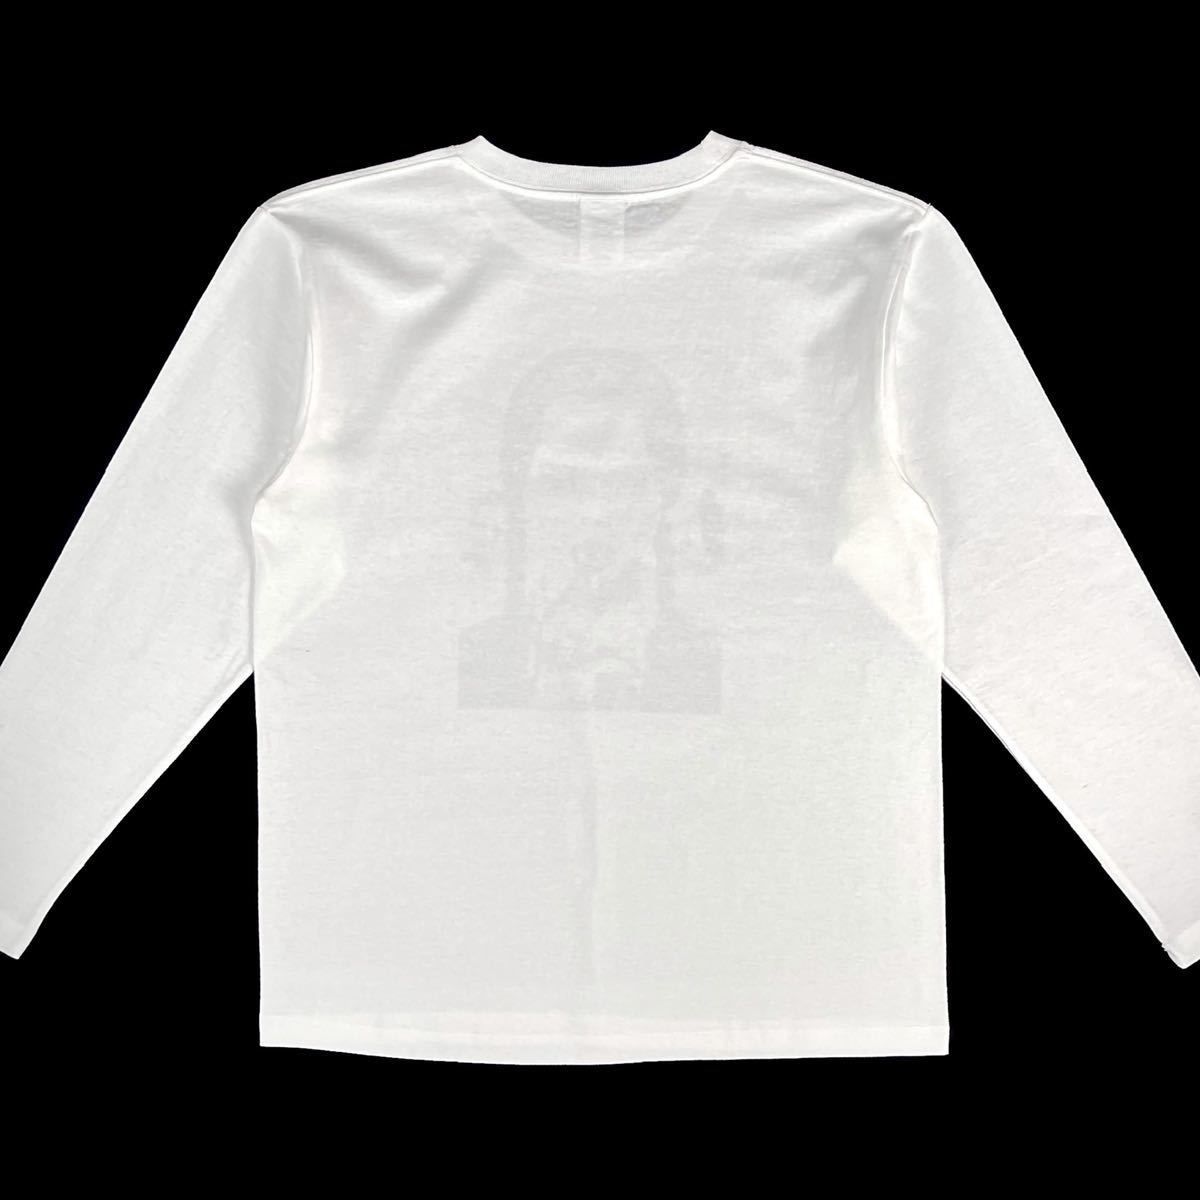 新品 アダムスファミリー ウェンズデー クリスティーナリッチ 映画 ゴスロリ ホラー少女 ロンT長袖Tシャツ XS Sサイズ 小さいタイト スリム